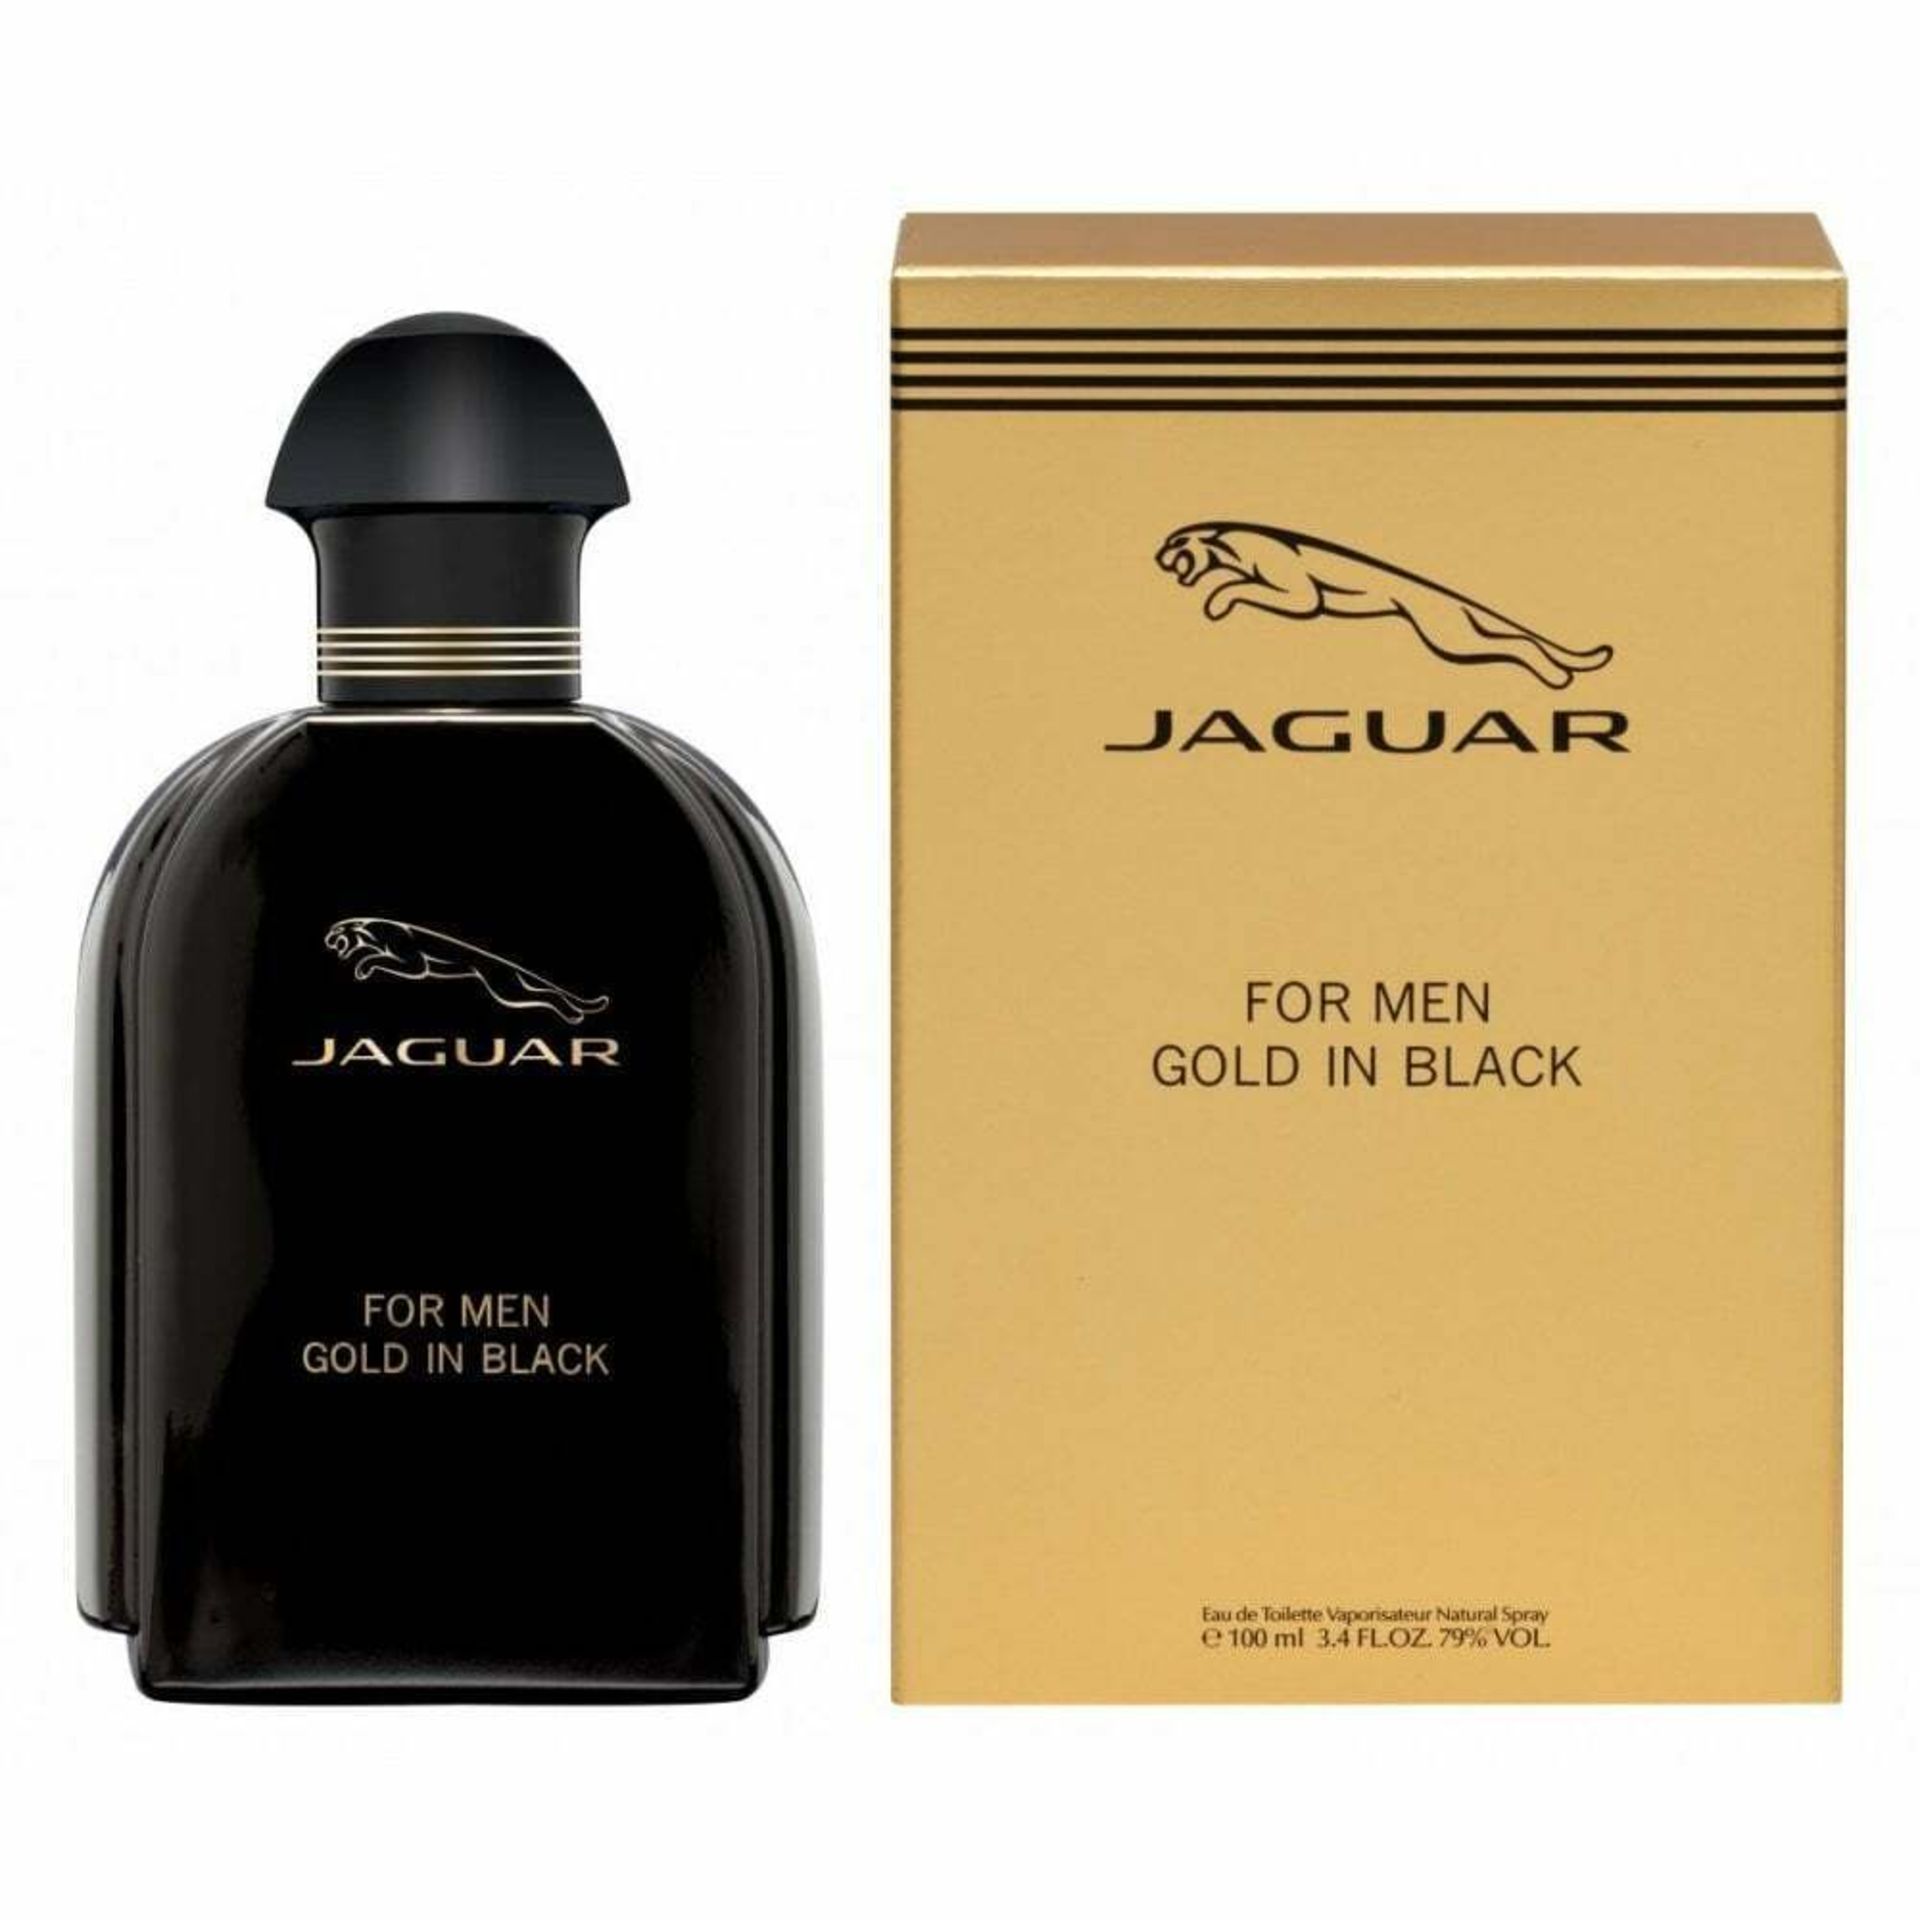 Jaguar Gold In Black Eau de Toilette 100ml Spray - Image 2 of 2